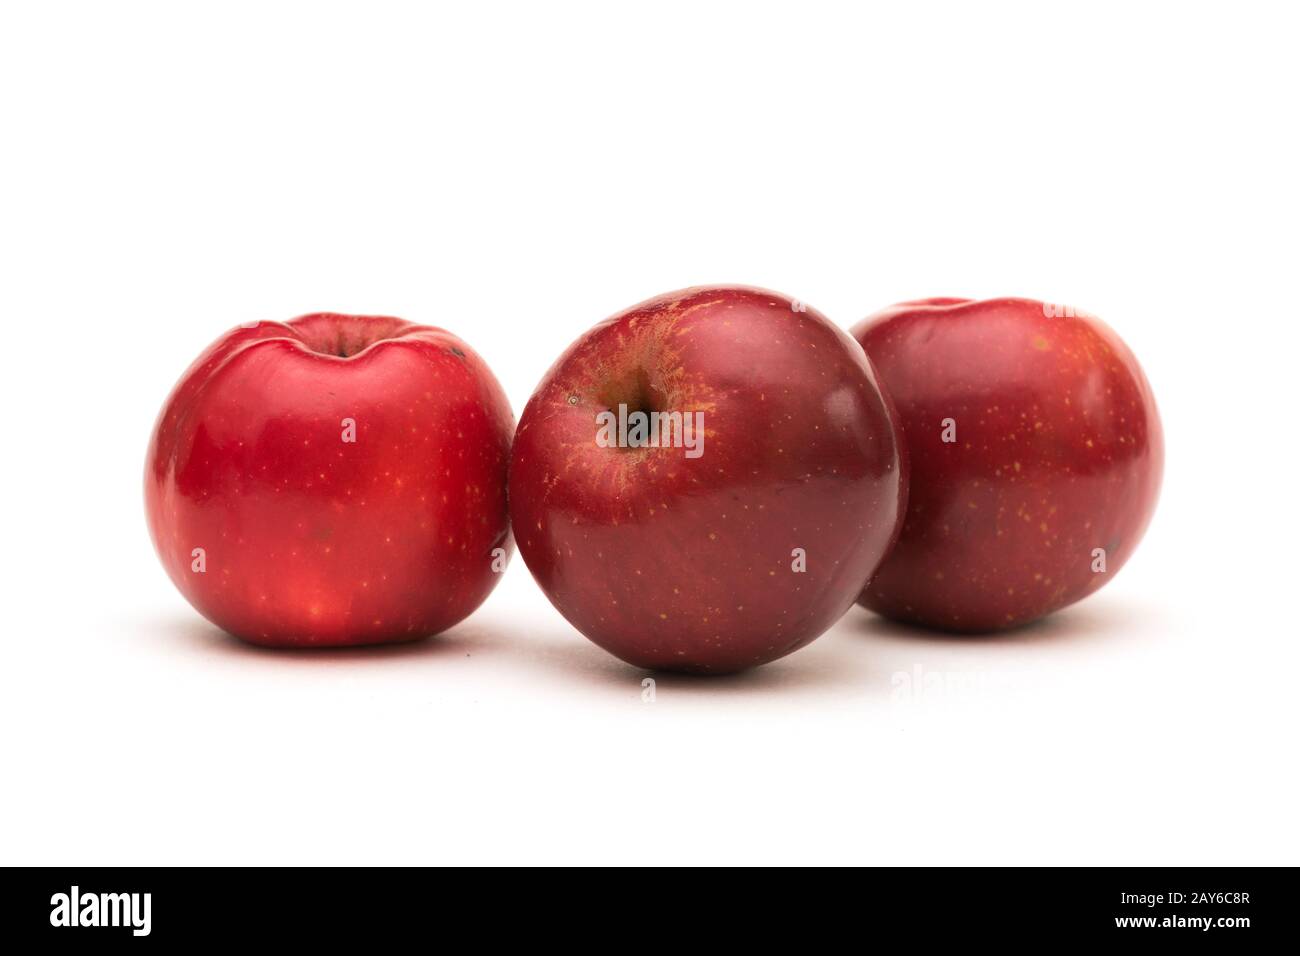 Organische gentechnisch freie rote Hocheisen-Äpfel, Sorte Gizil Ahmet, in Aserbaidschan gezüchtet Stockfoto